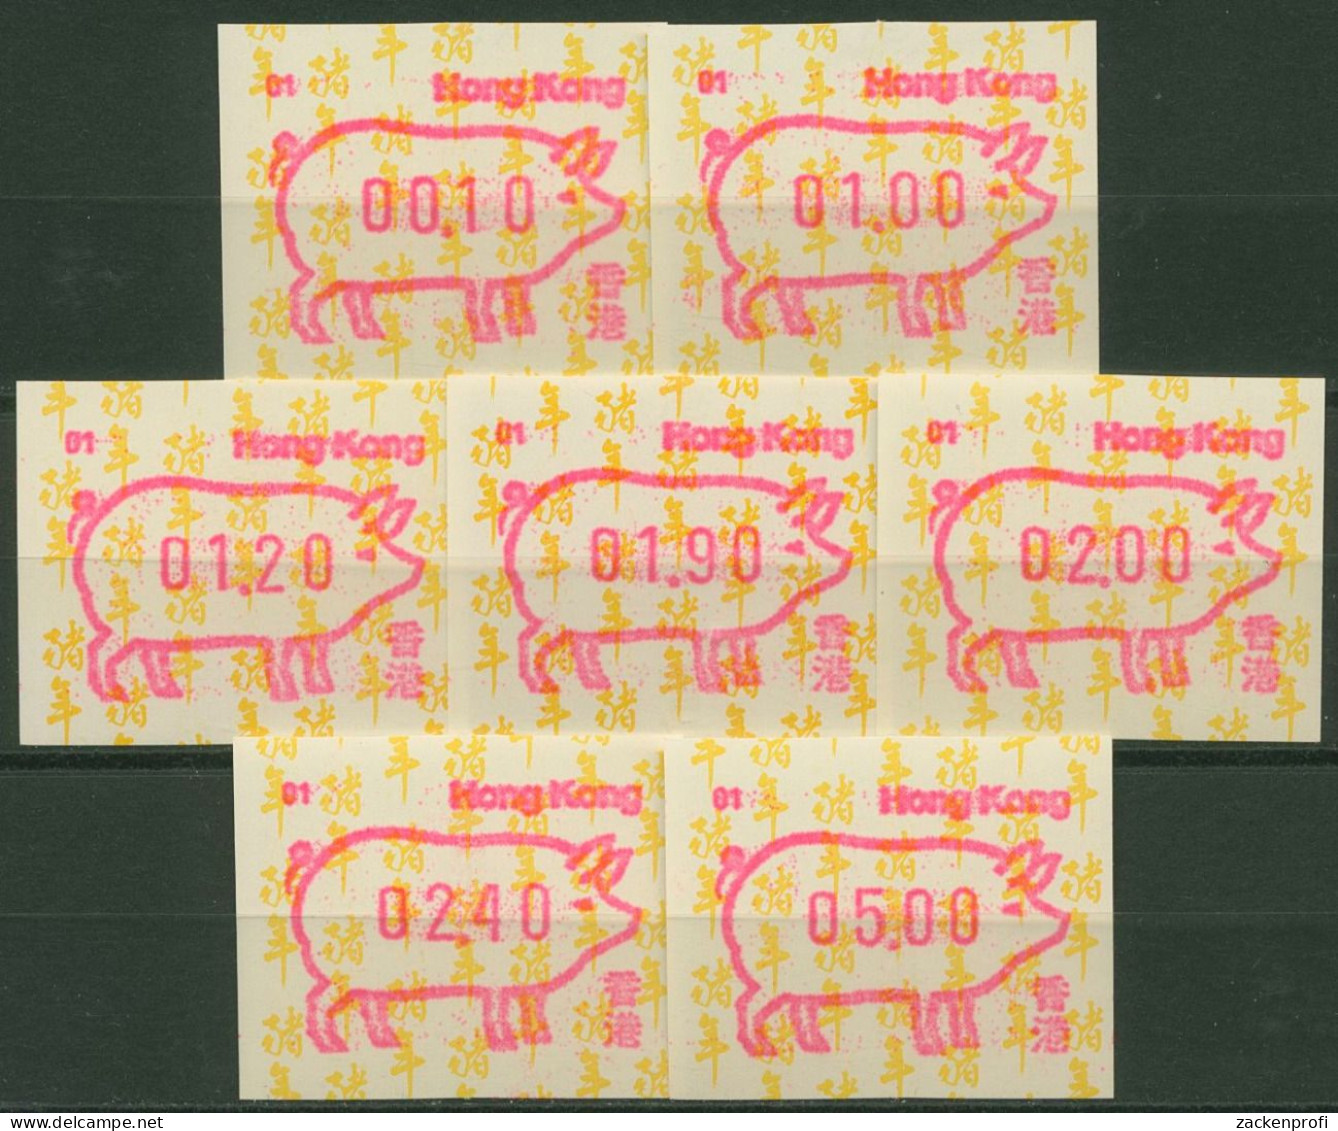 Hongkong 1995 Jahr Des Schweins Satz 7 Werte ATM 10.1 Automat 01 Postfrisch - Distributori